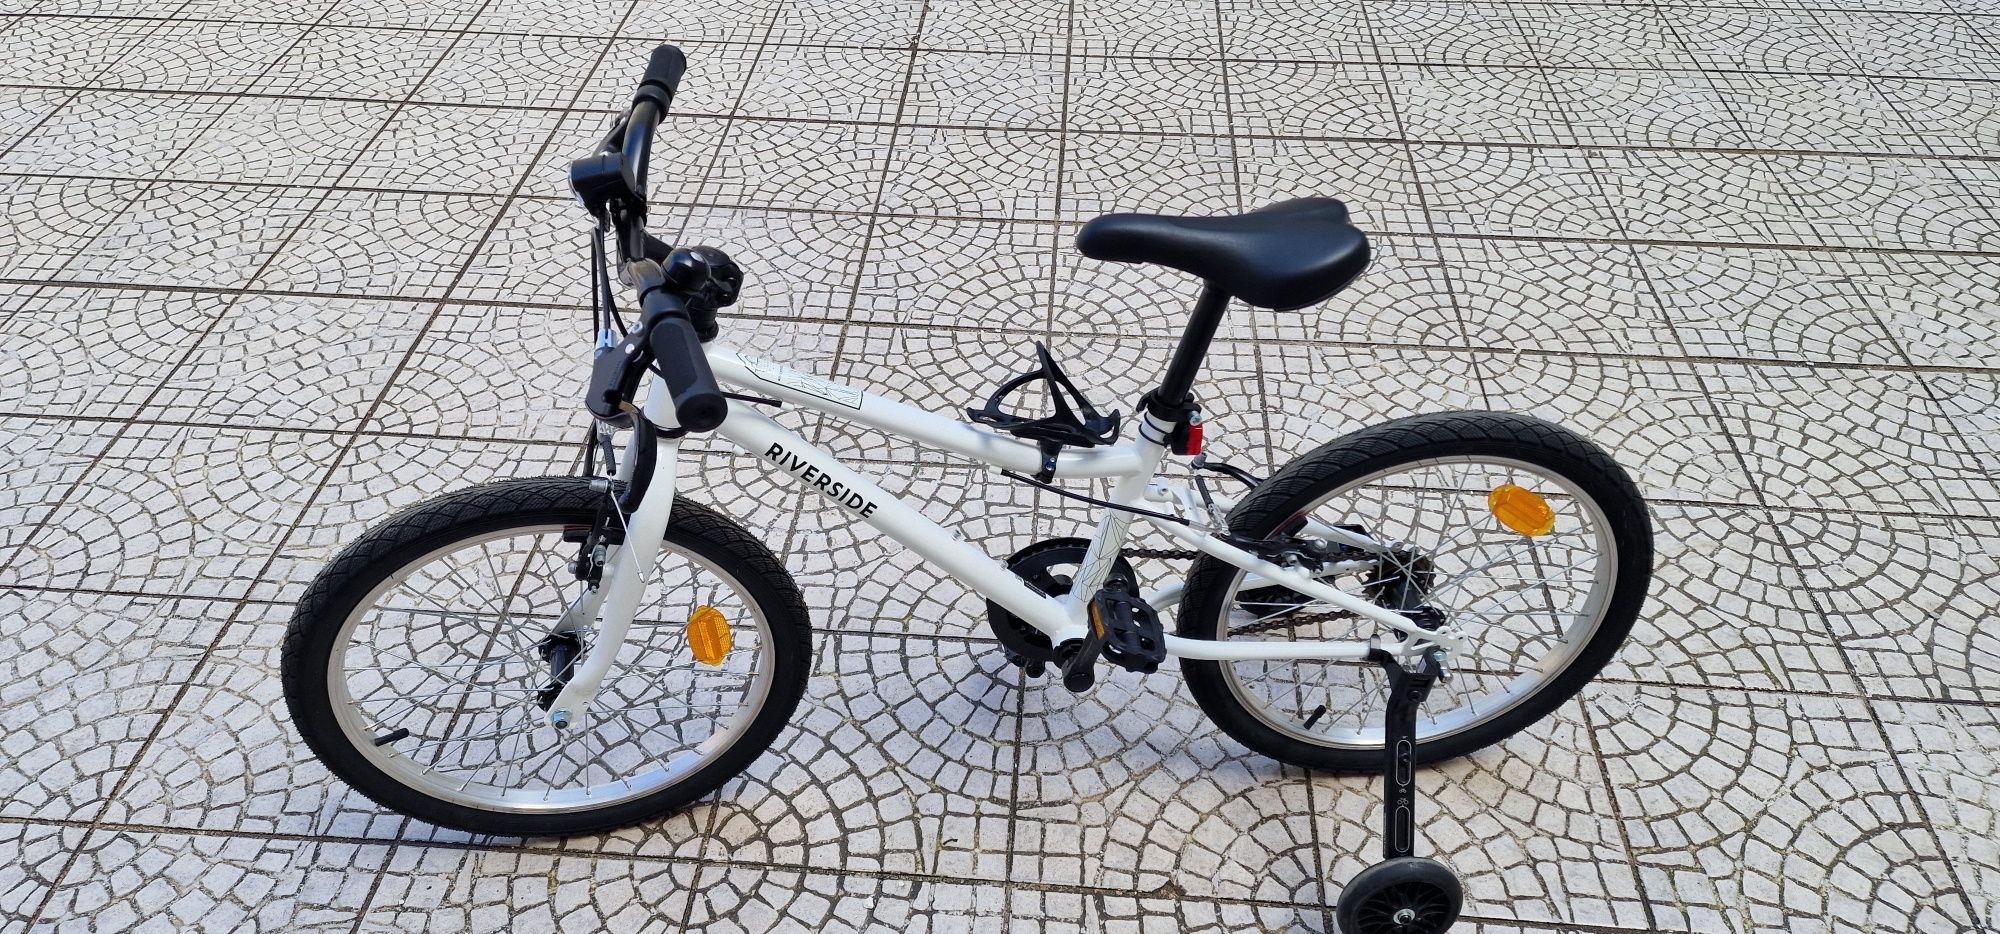 Bicicleta de criança roda 20